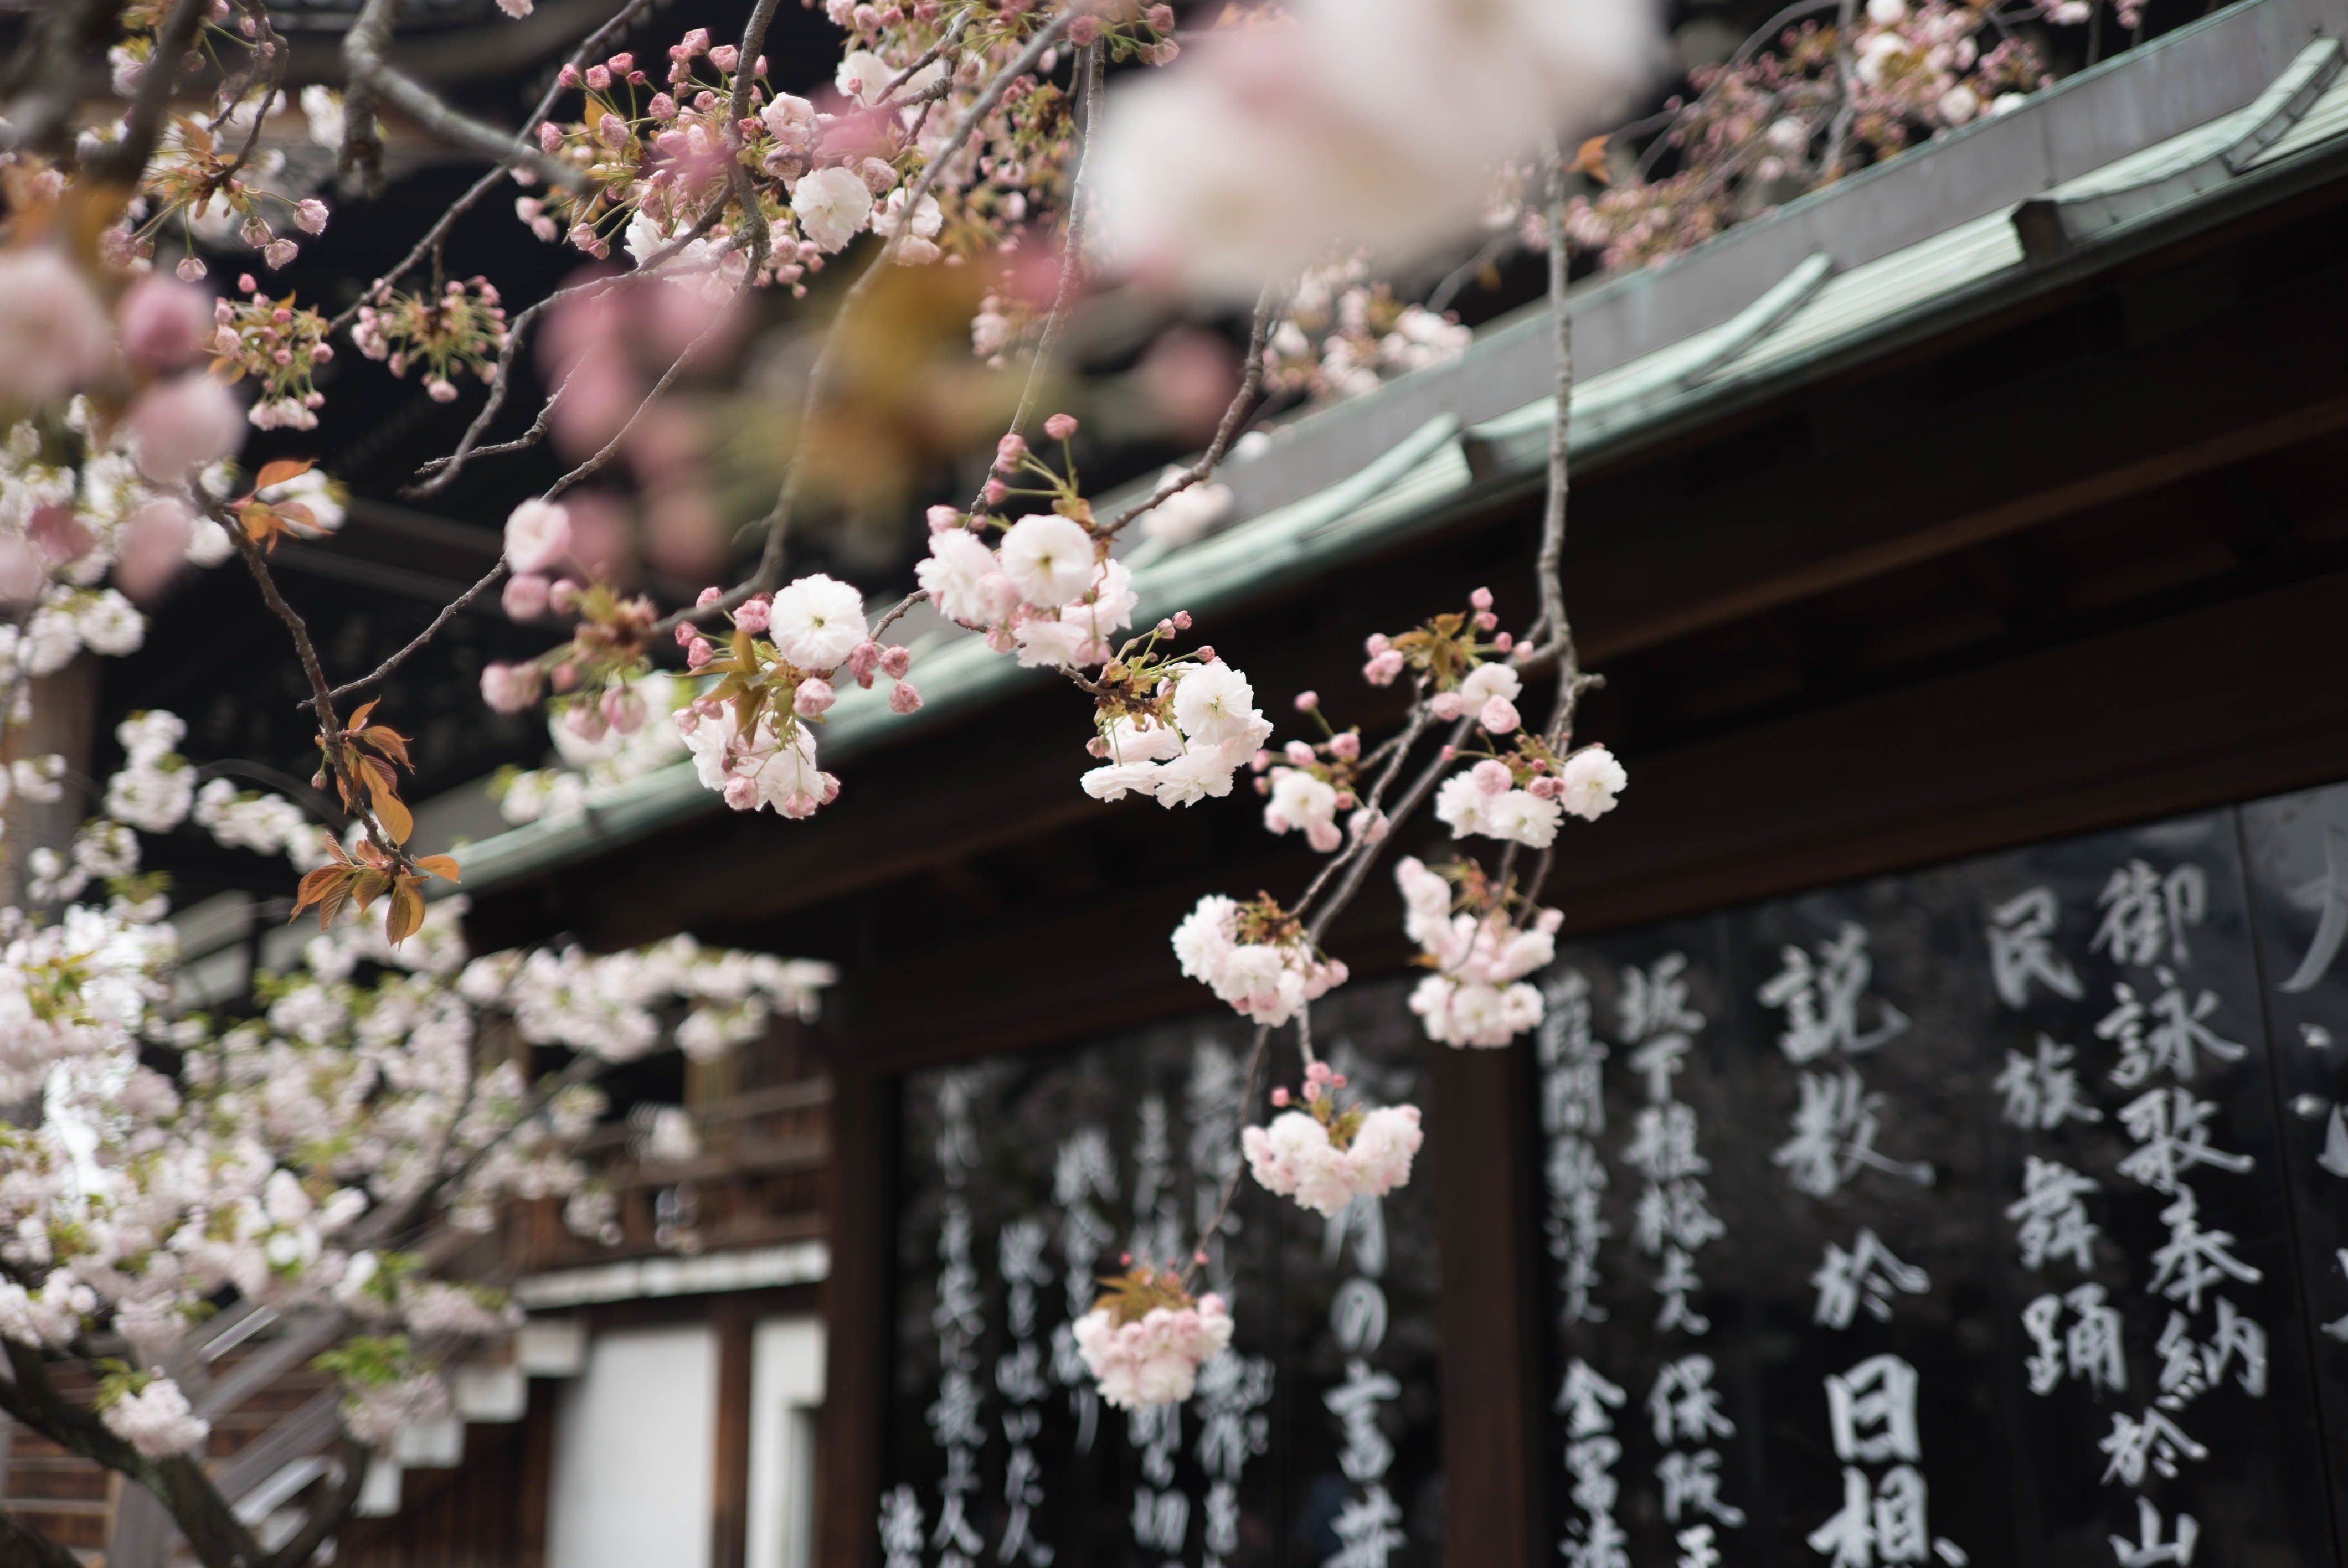 Boomer reccomend Asian style cherry blossom picuture